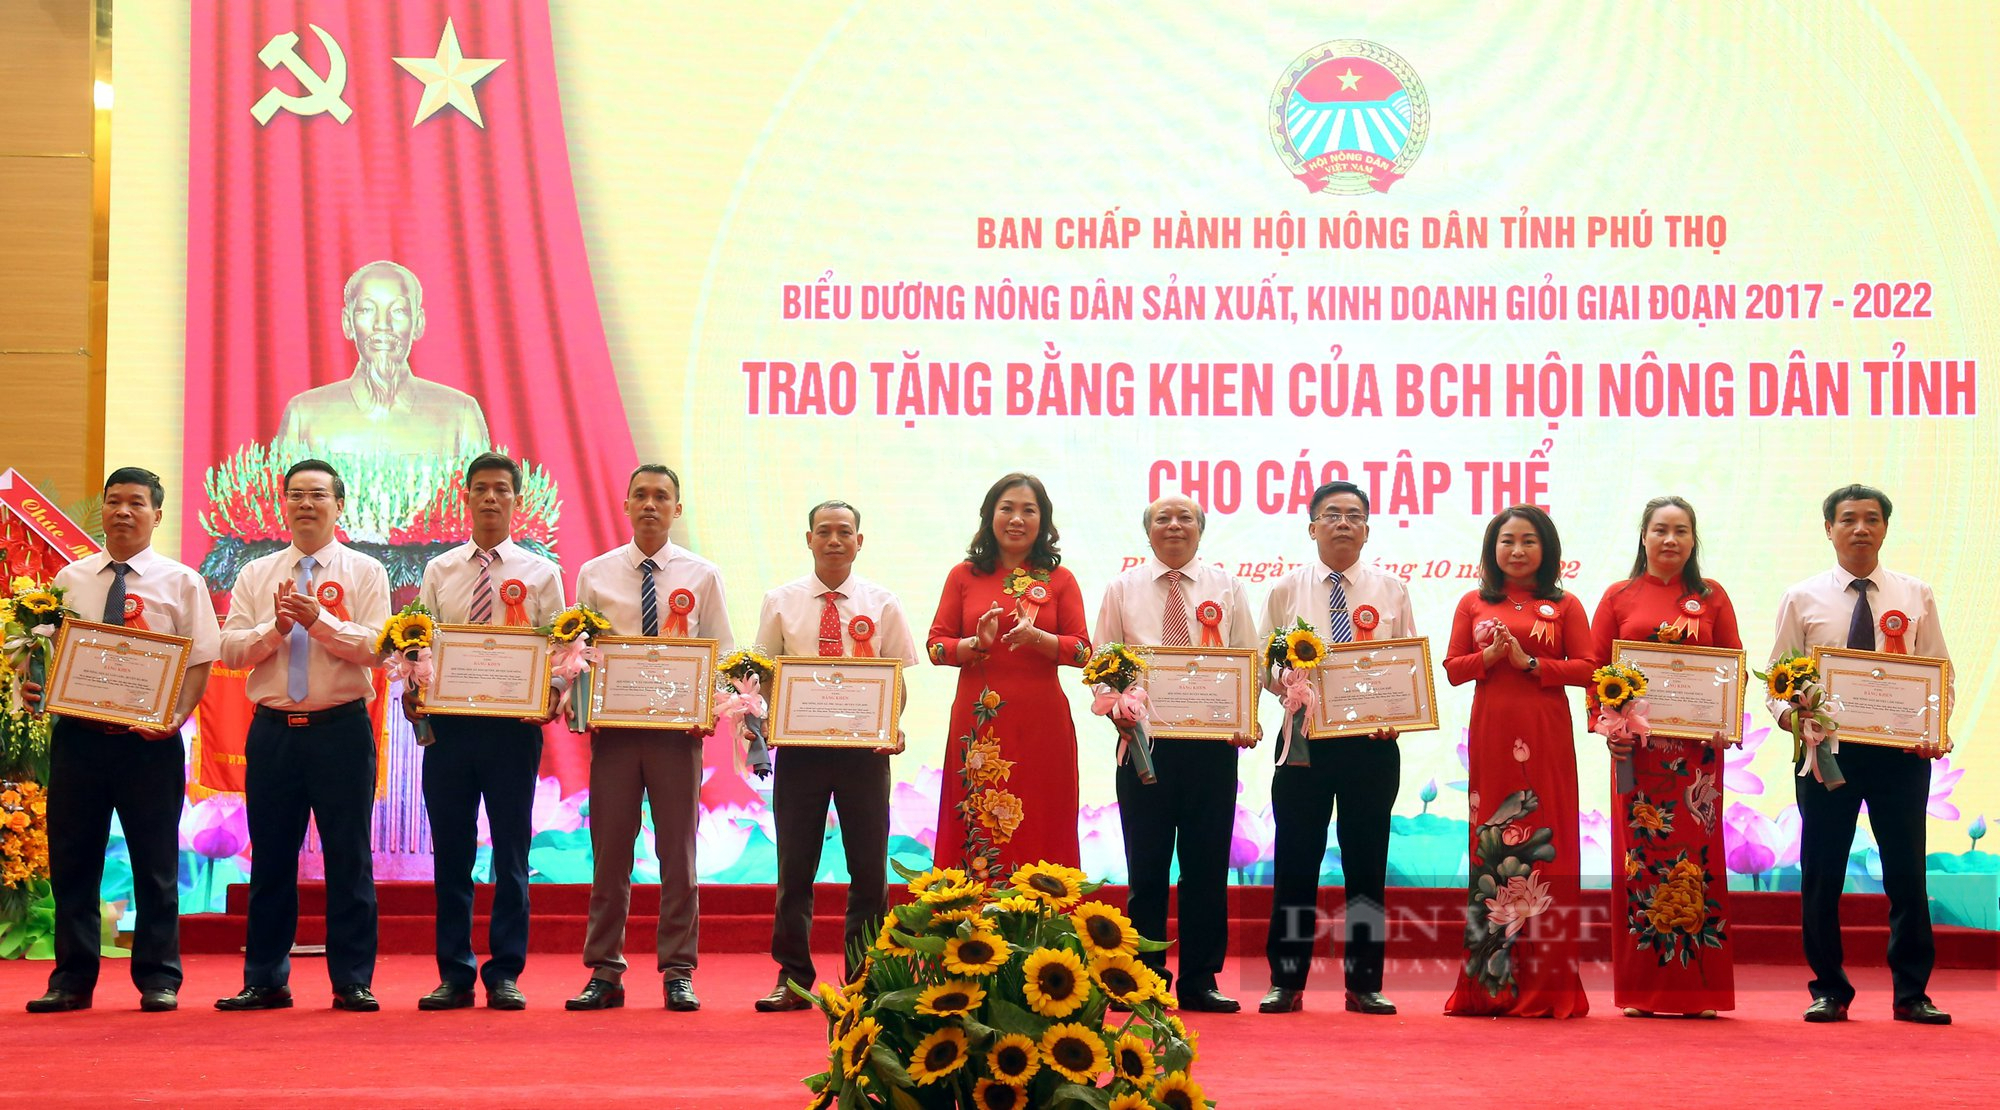 Khen thưởng 13 tập thể, 130 nông dân trong phong trào nông dân sản xuất kinh doanh giỏi 5 năm qua ở Phú Thọ - Ảnh 6.